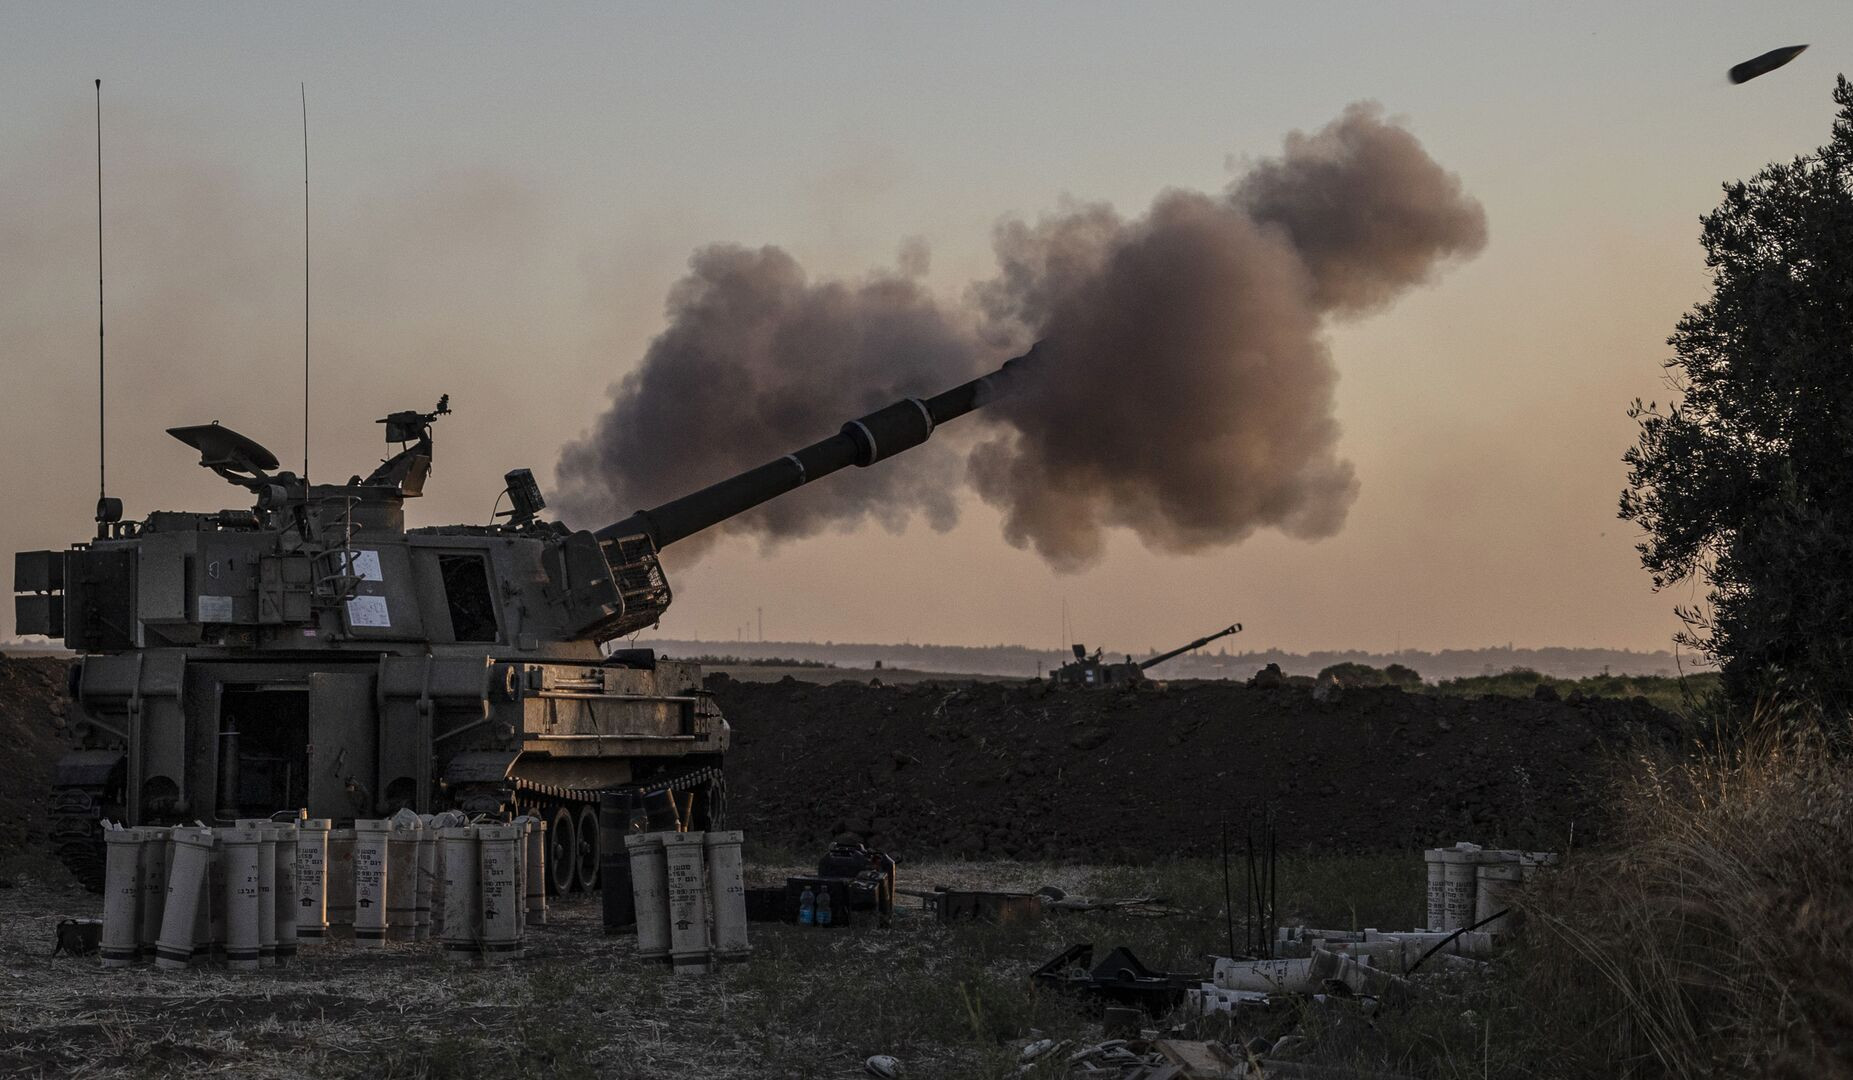 Իսրայելական զինուժը հարվածներ է հասցրել Սիրիայում իրանական և սիրիական օբյեկտներին